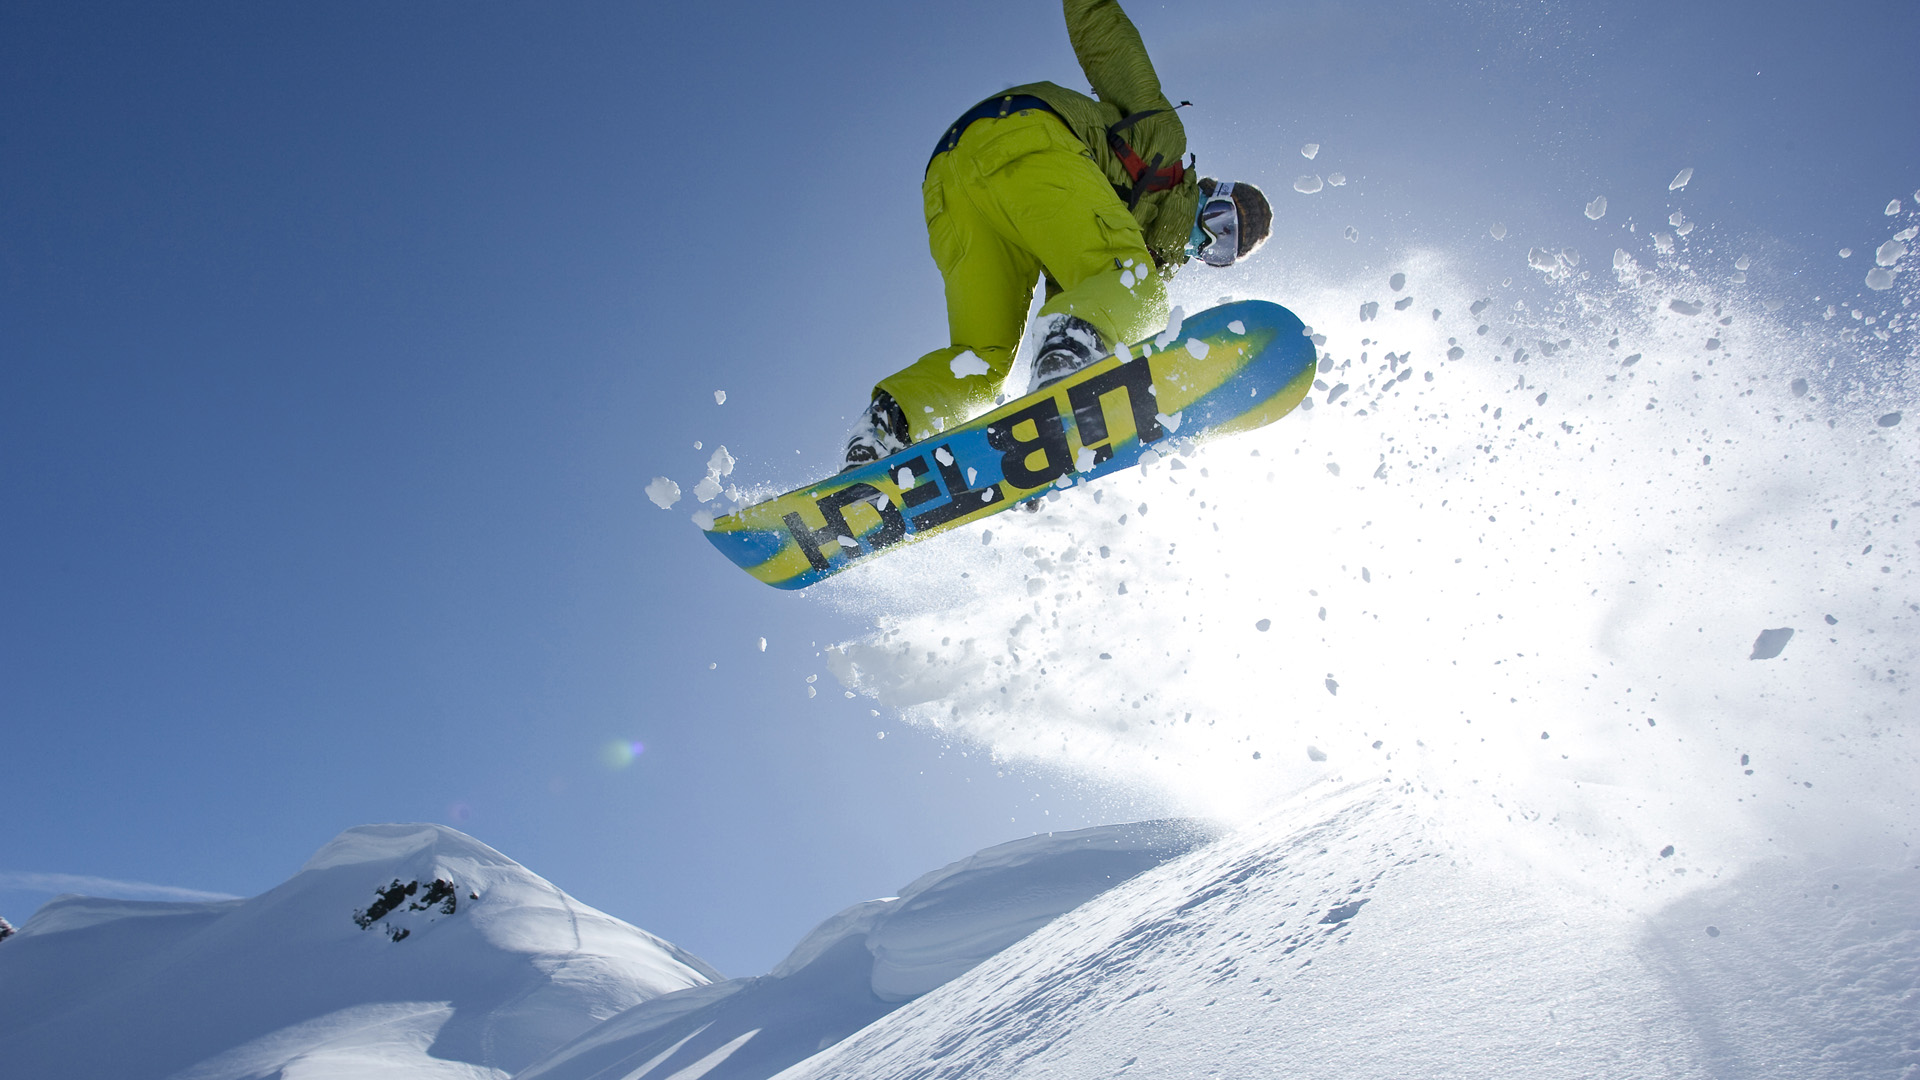 Fond Cran Snowboarding T L Charger Retour